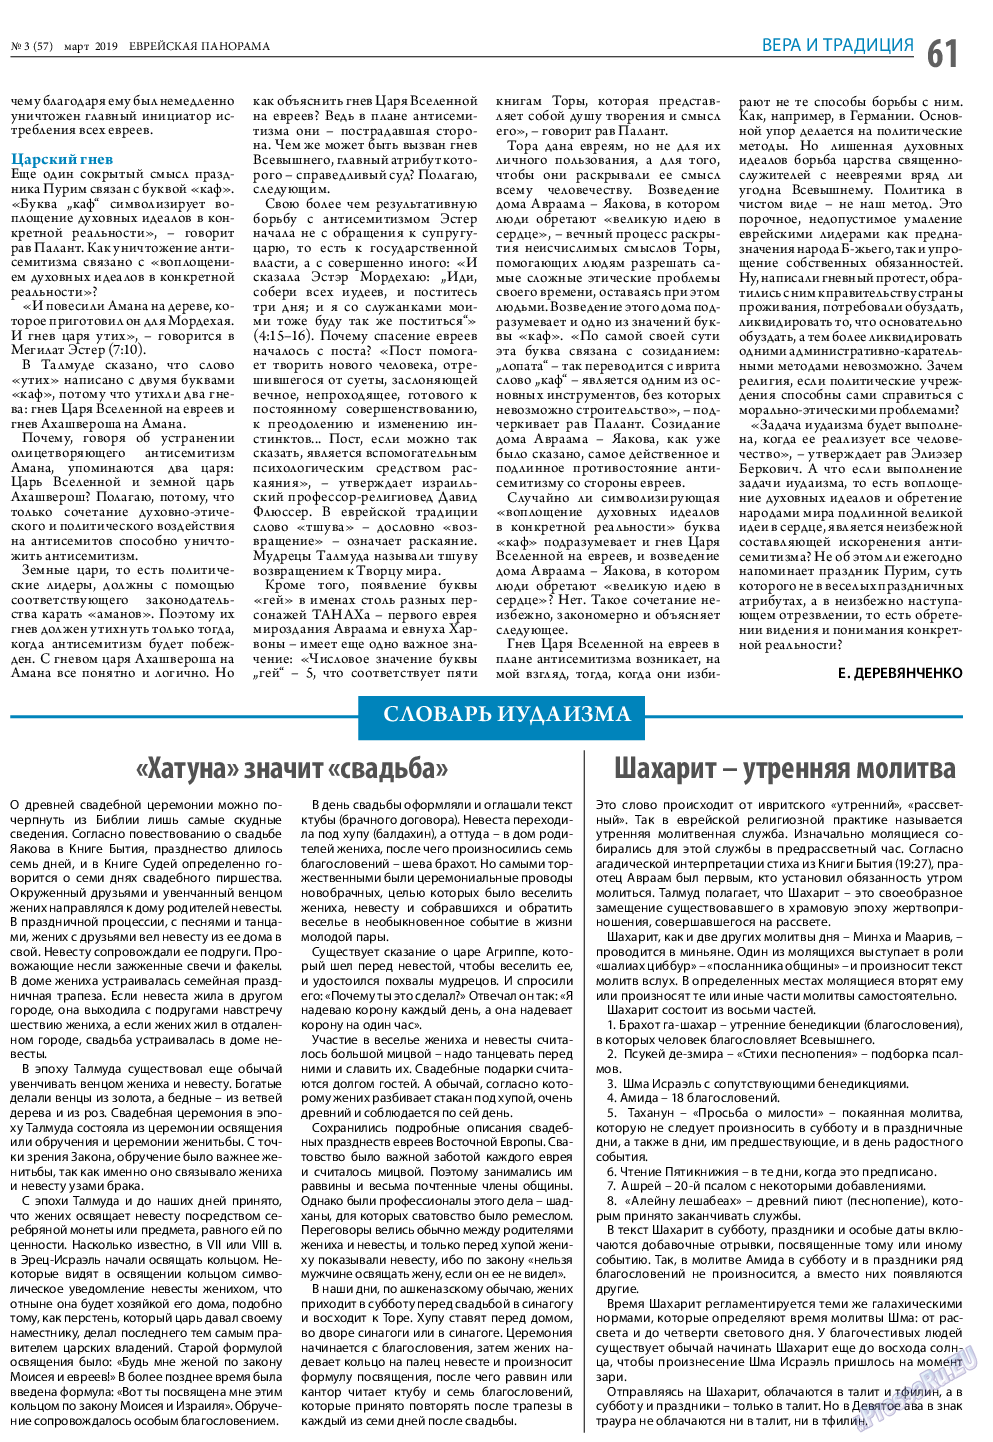 Еврейская панорама (газета). 2019 год, номер 3, стр. 61